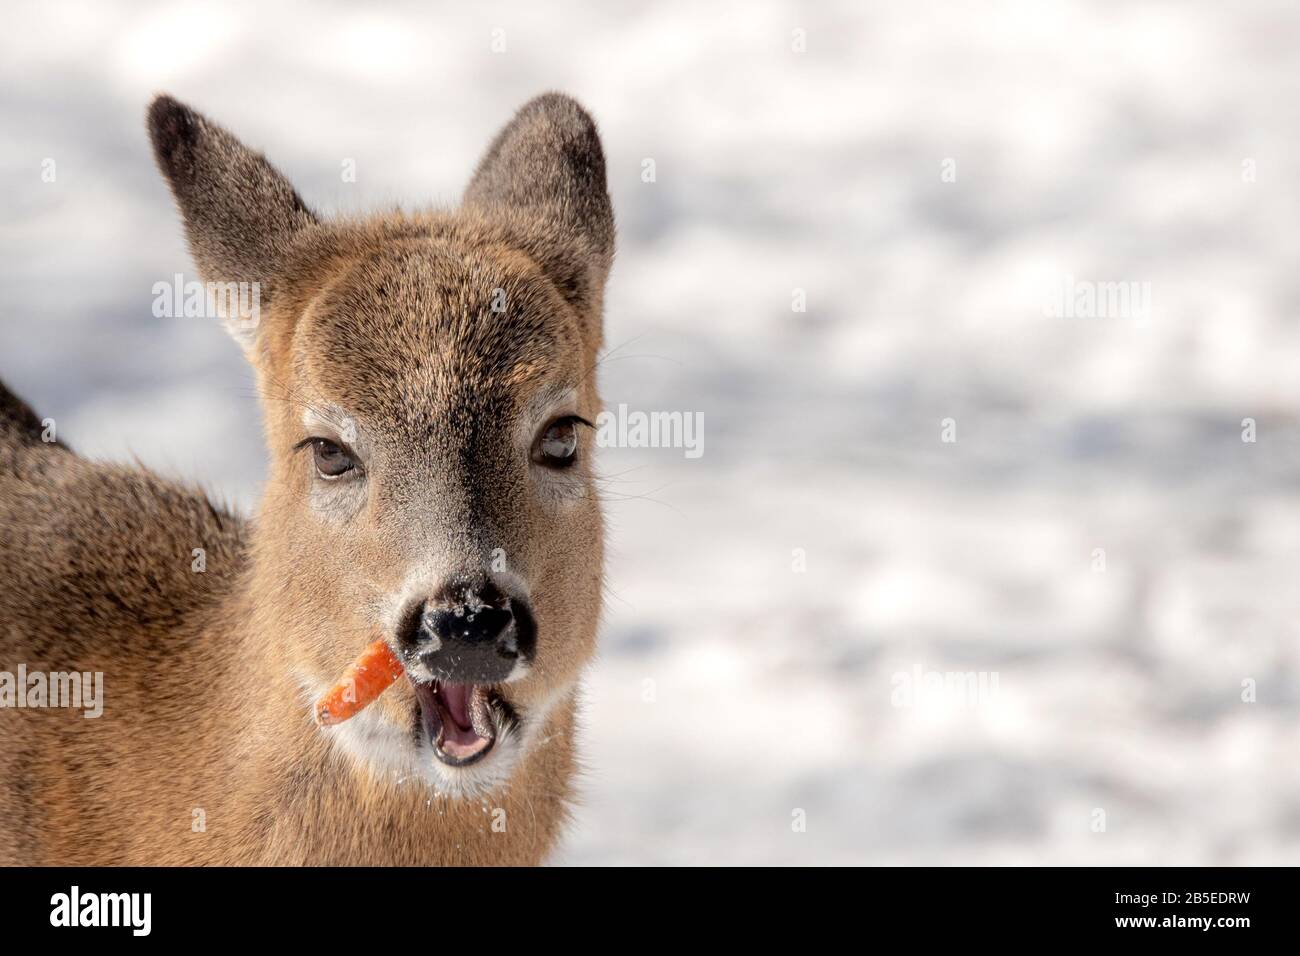 Un cerf de Virginie mangeant une carotte en hiver. Elle a la carotte qui dépasse le côté de sa bouche. Neige blanche à l'arrière-plan. Banque D'Images